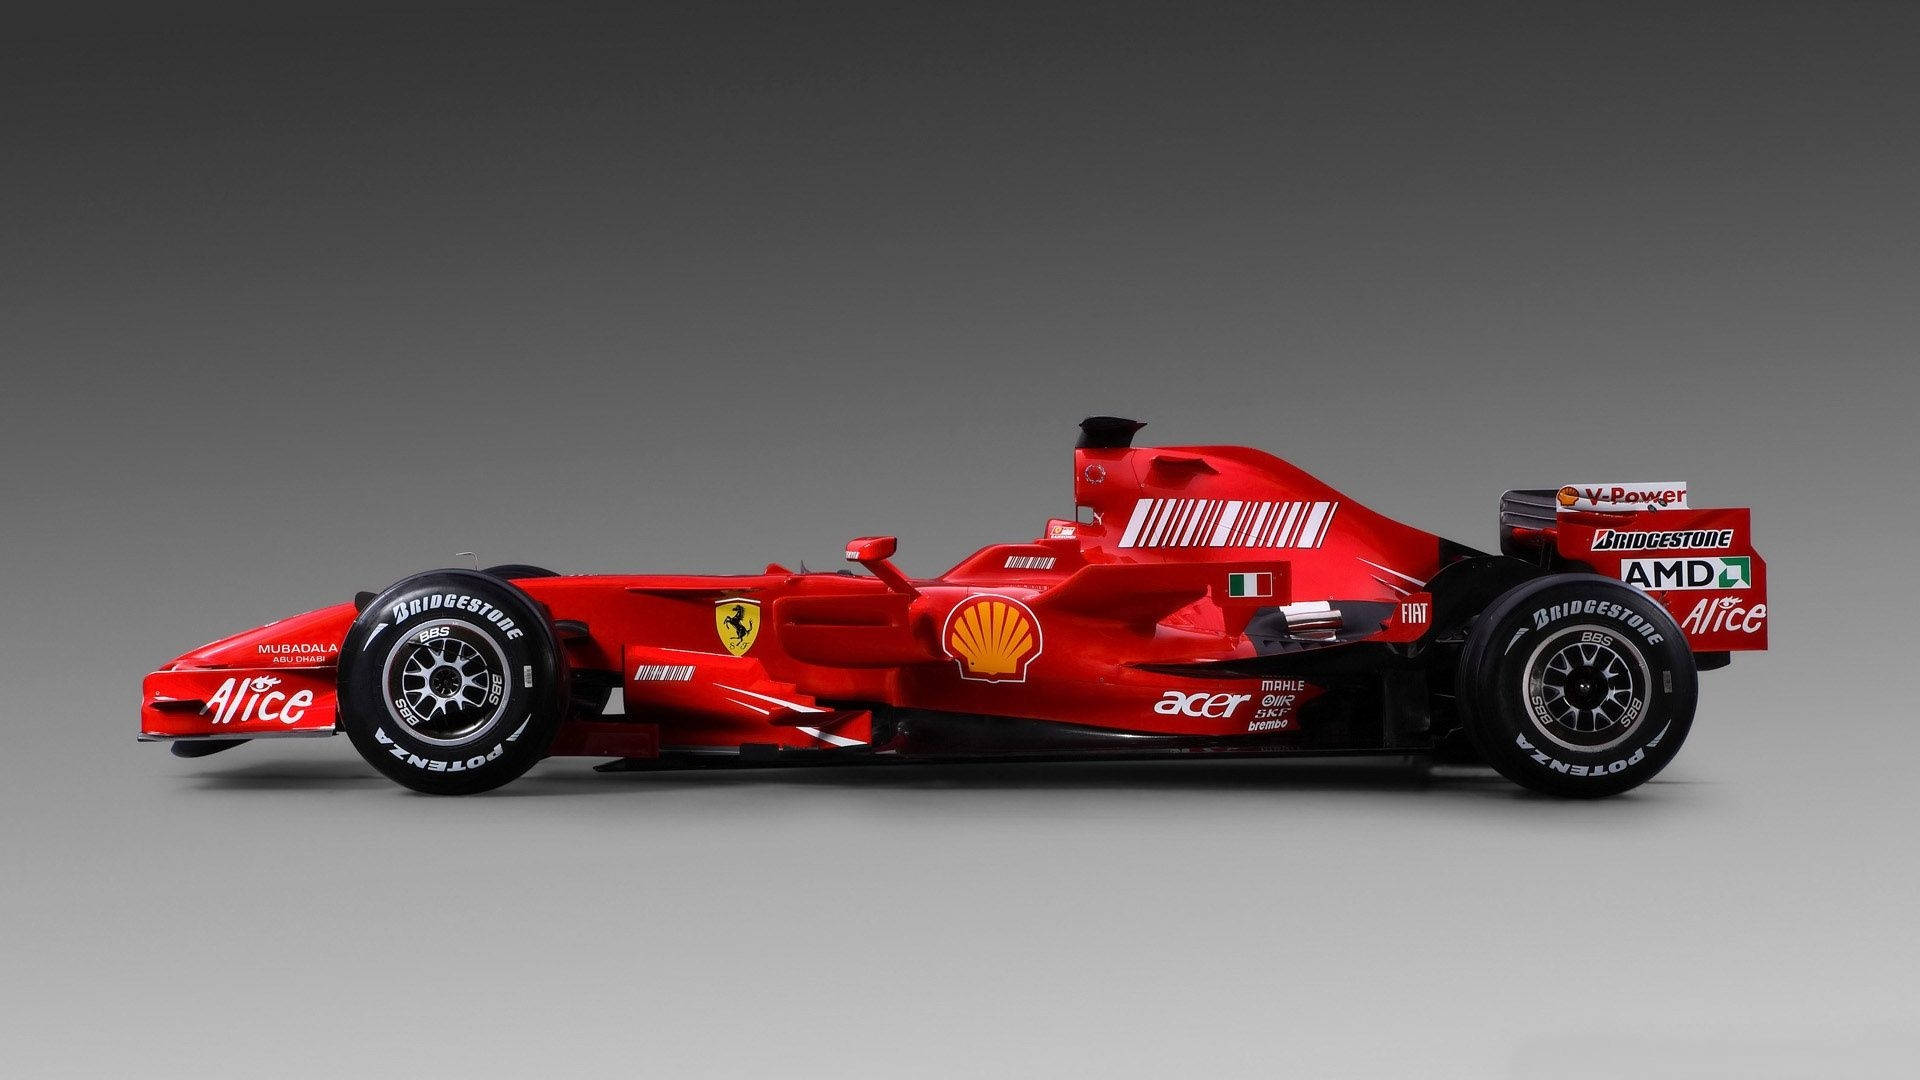 Fondode Pantalla De Un Auto De Fórmula 1 De Ferrari. Fondo de pantalla